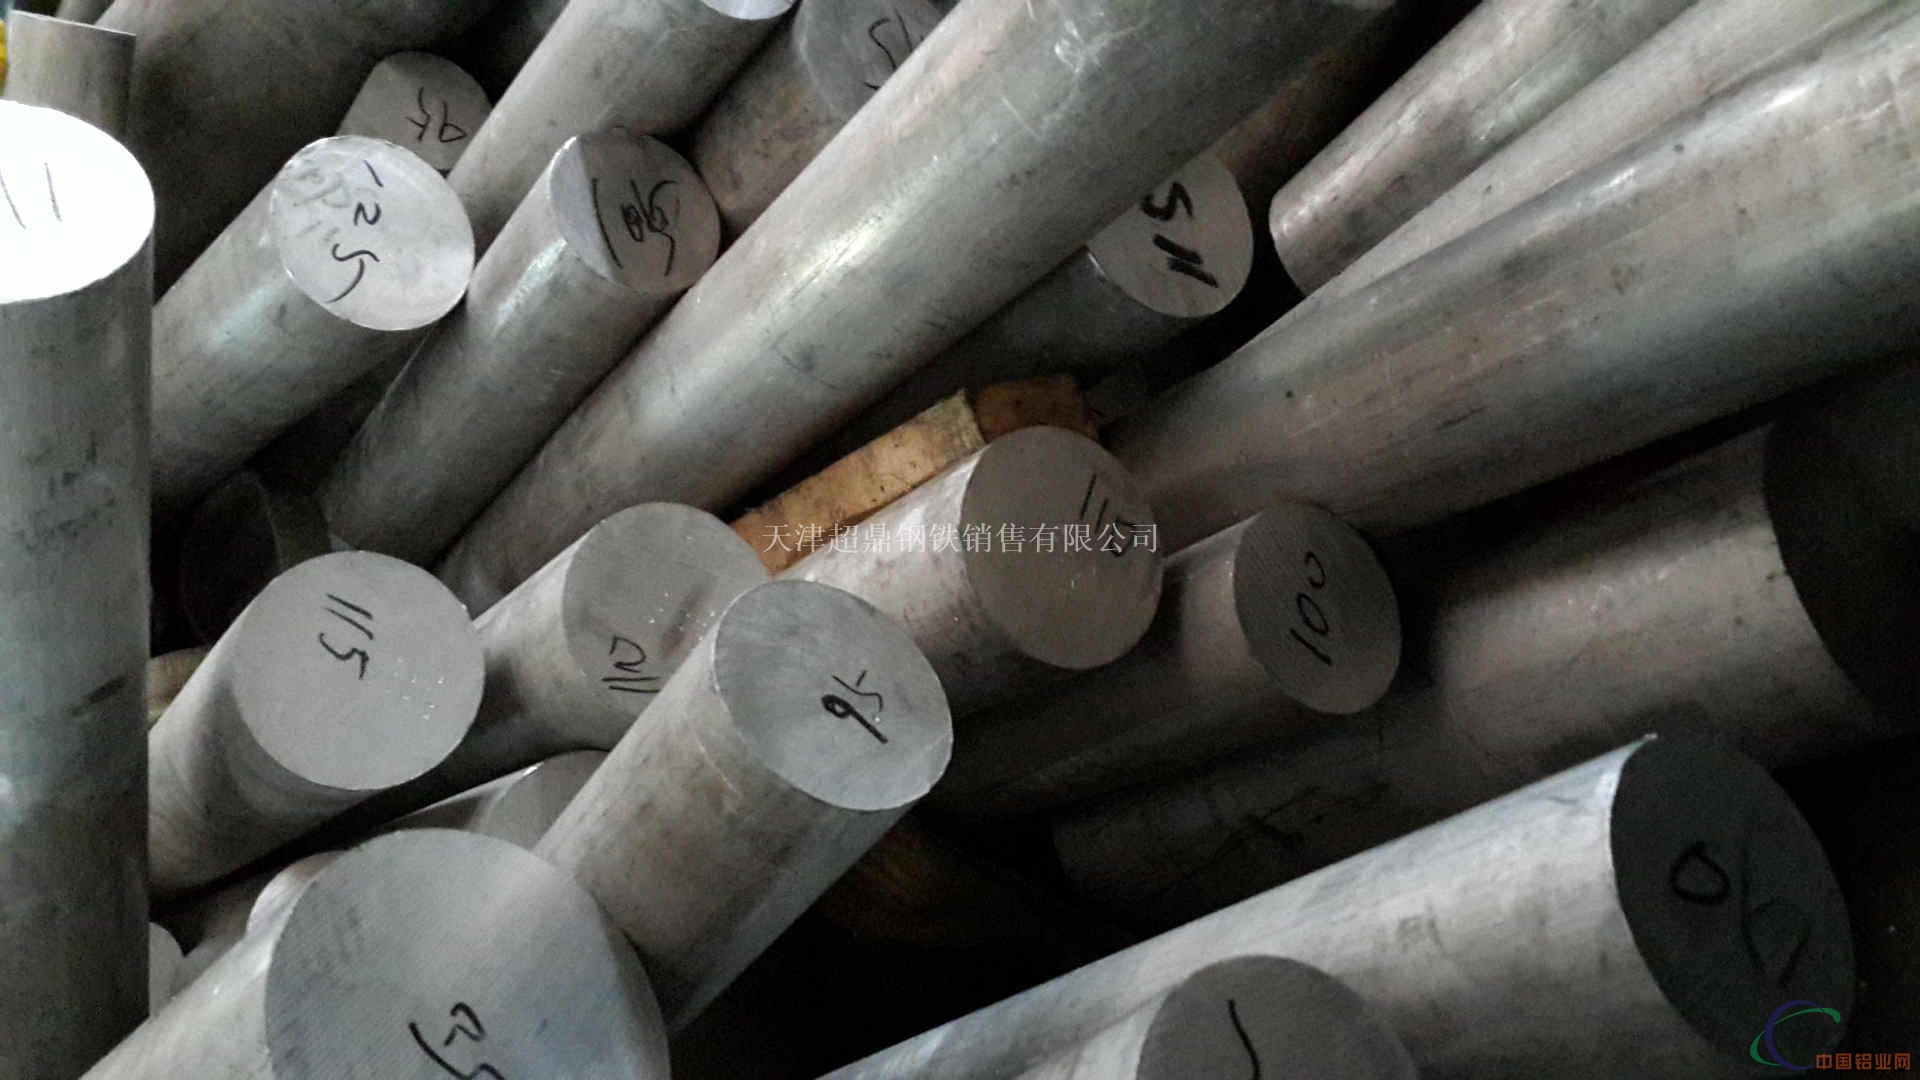 天津铝棒供应-6063铝棒切割-6063铝棒生产